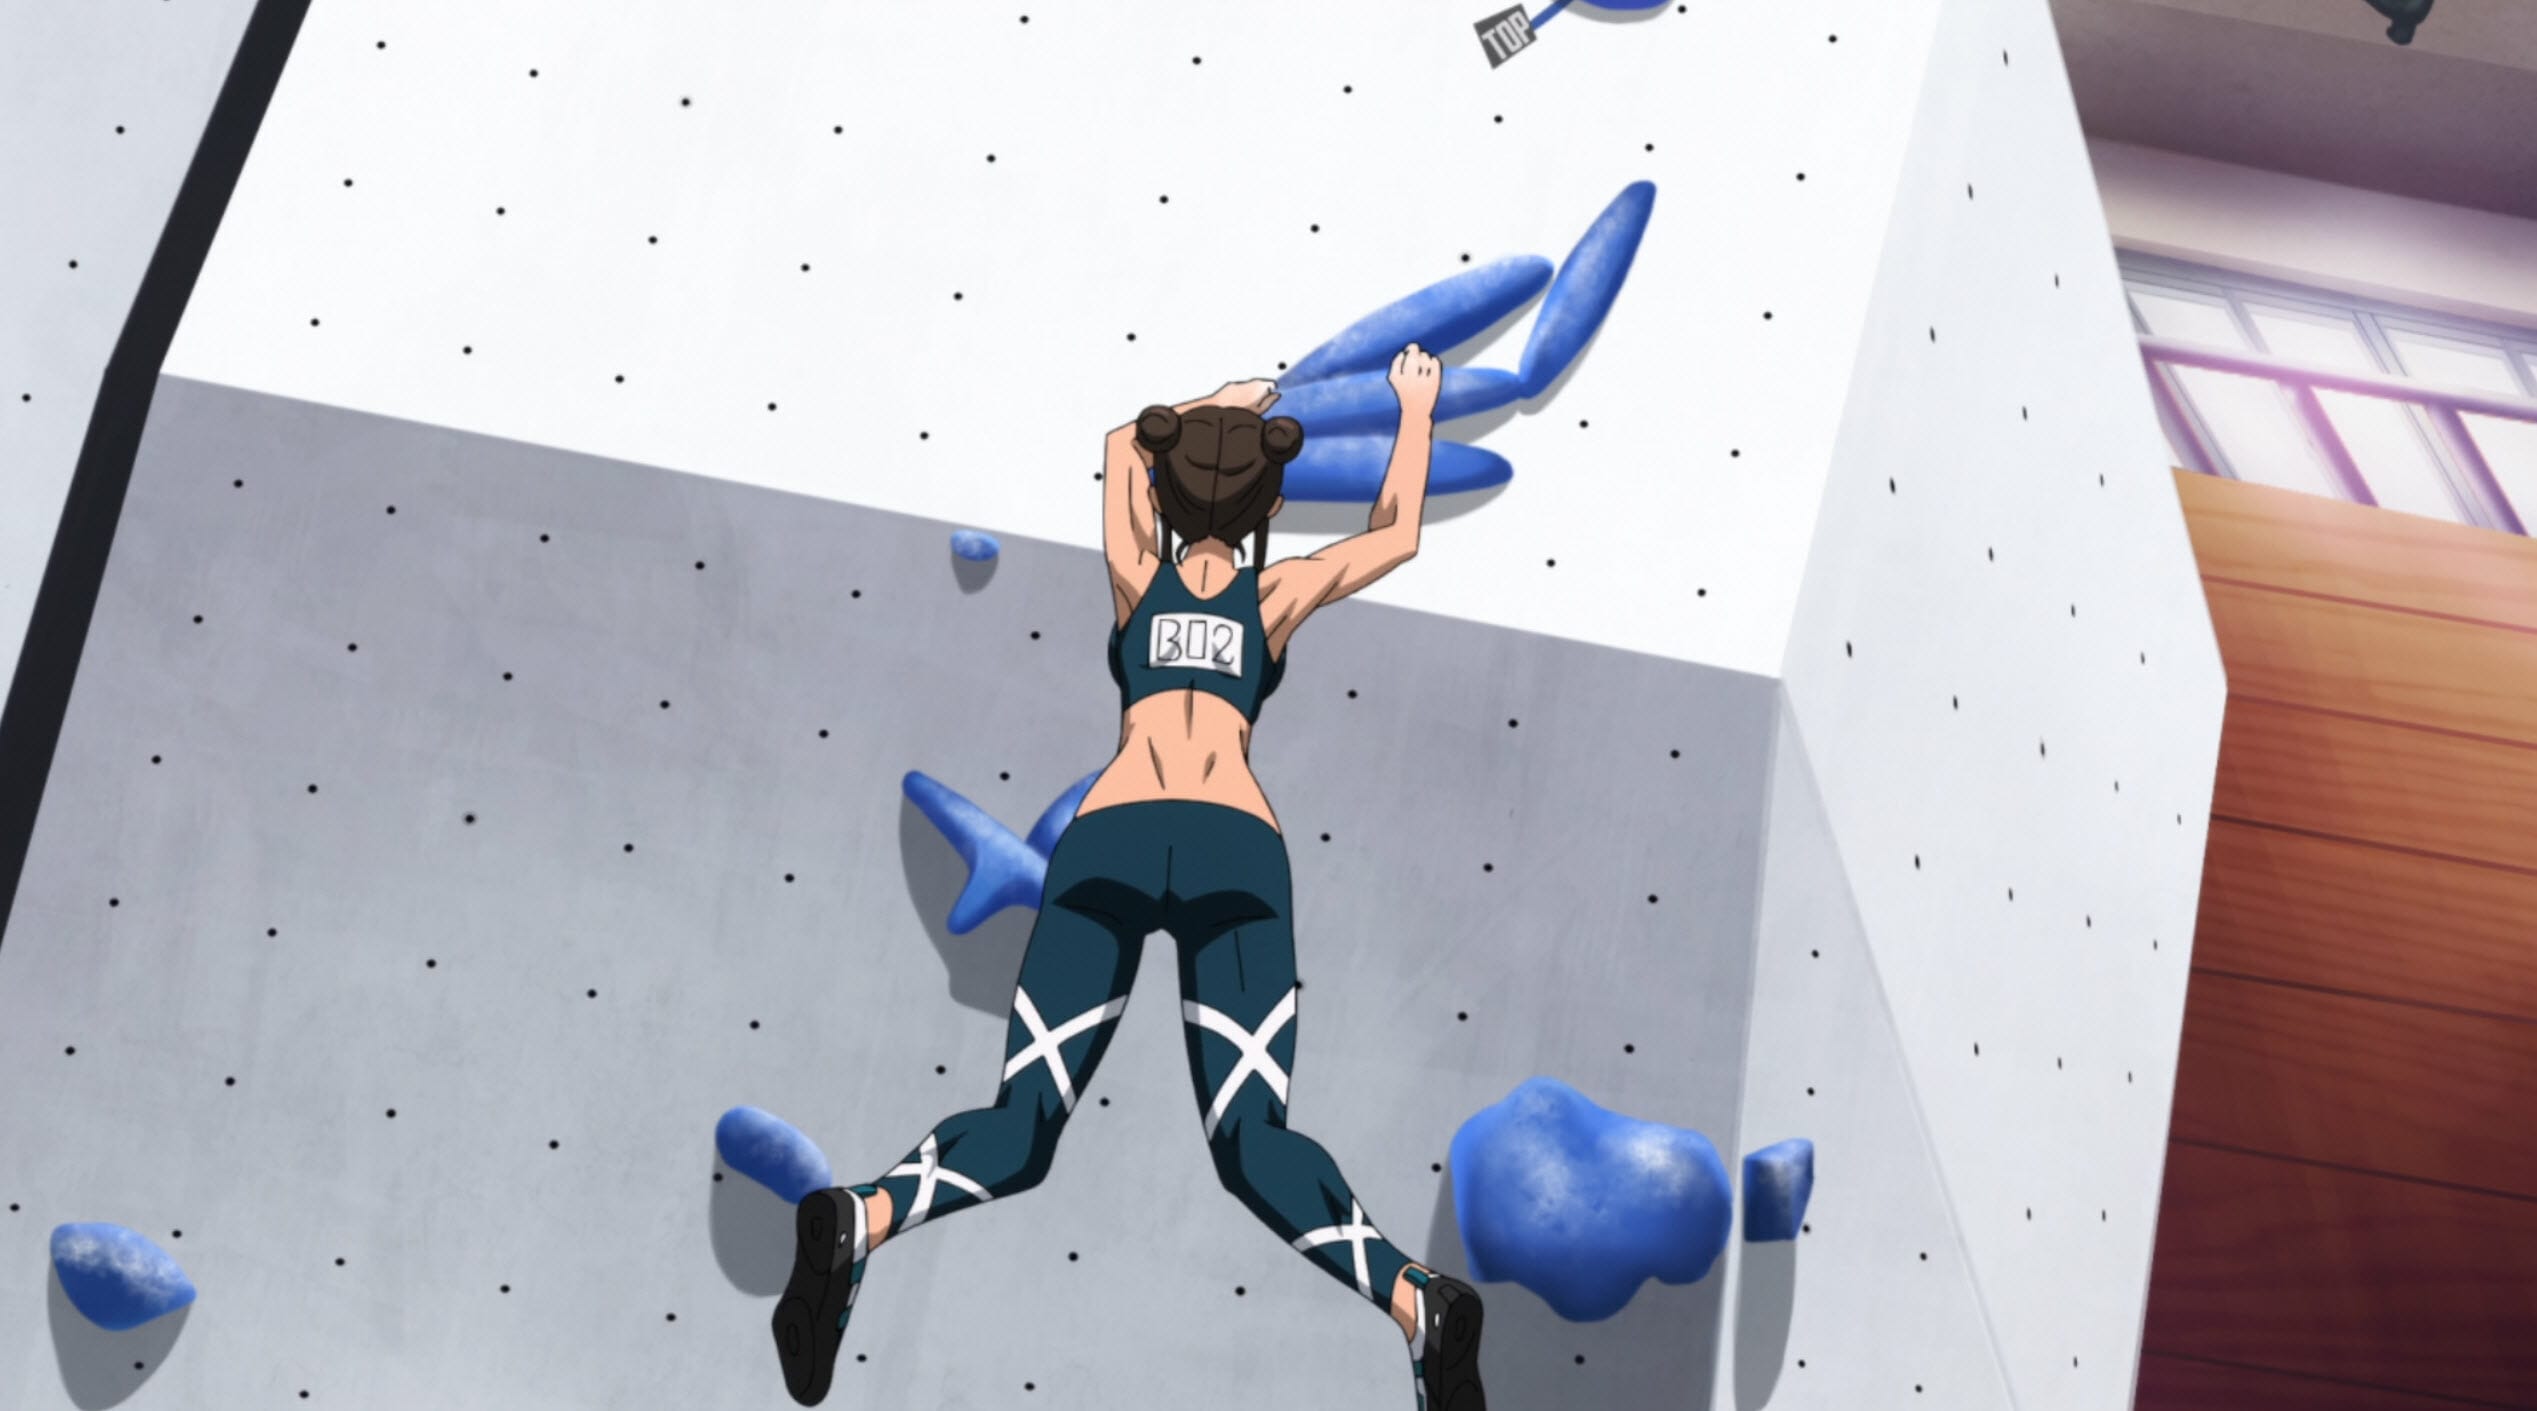 Iwakakeru -Sport Climbing Girls-